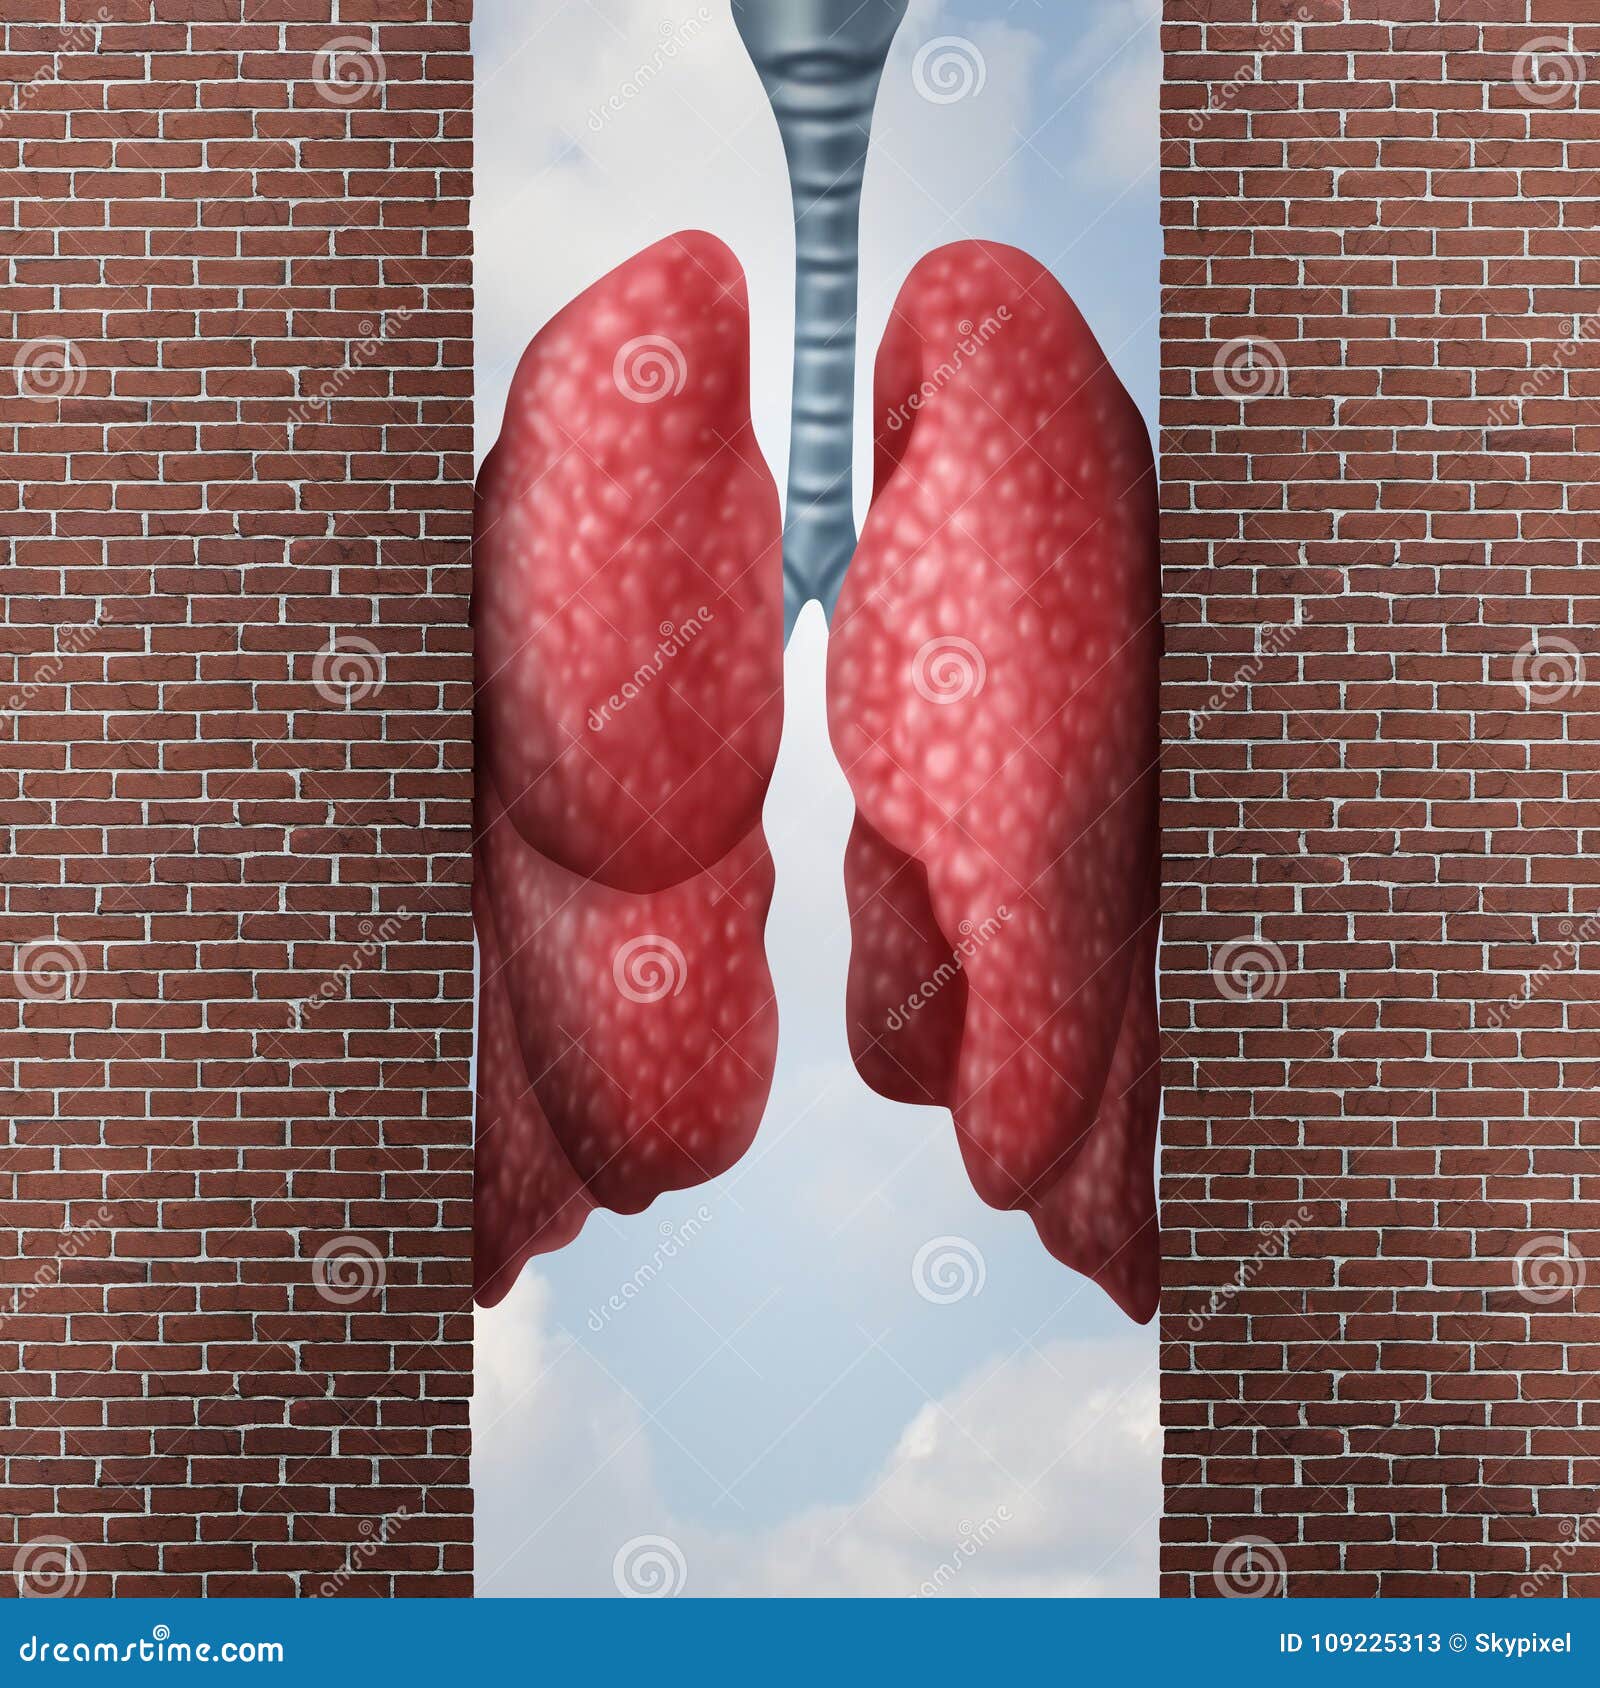 asthma health problem